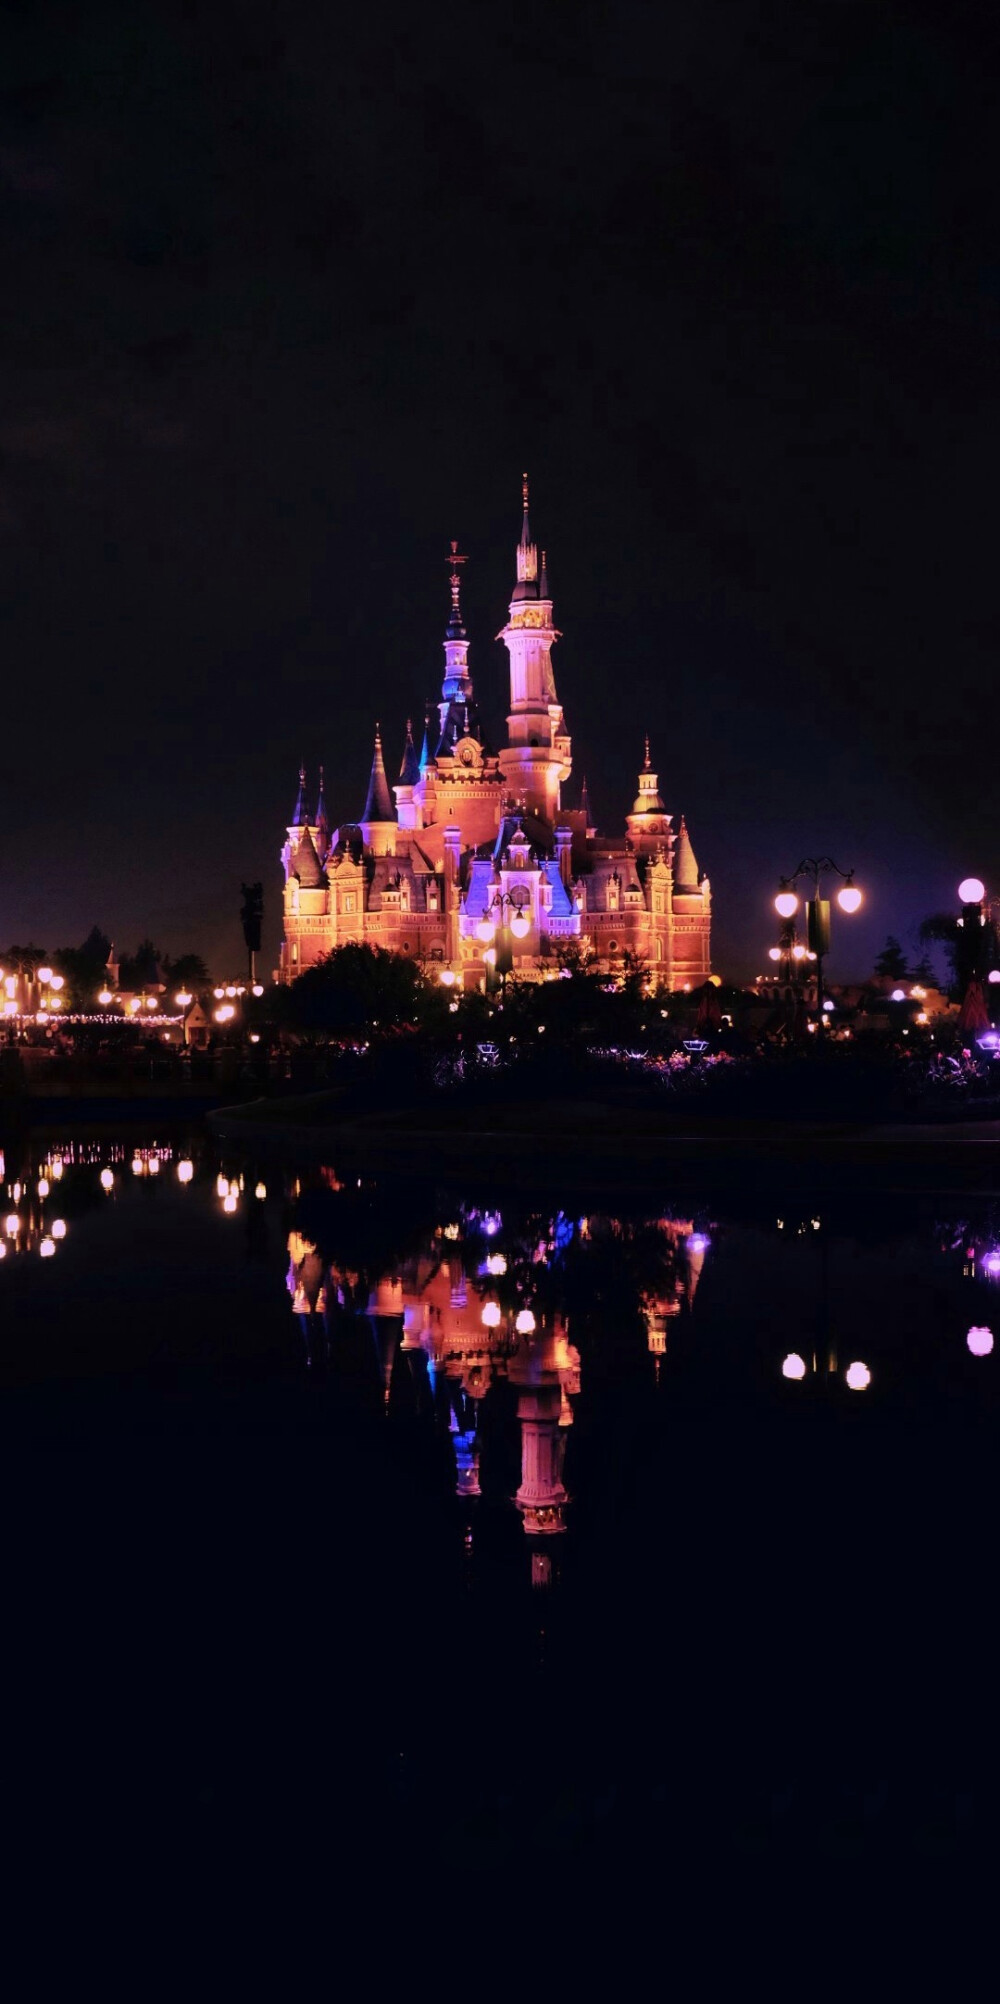 迪士尼乐园背景图夜晚图片